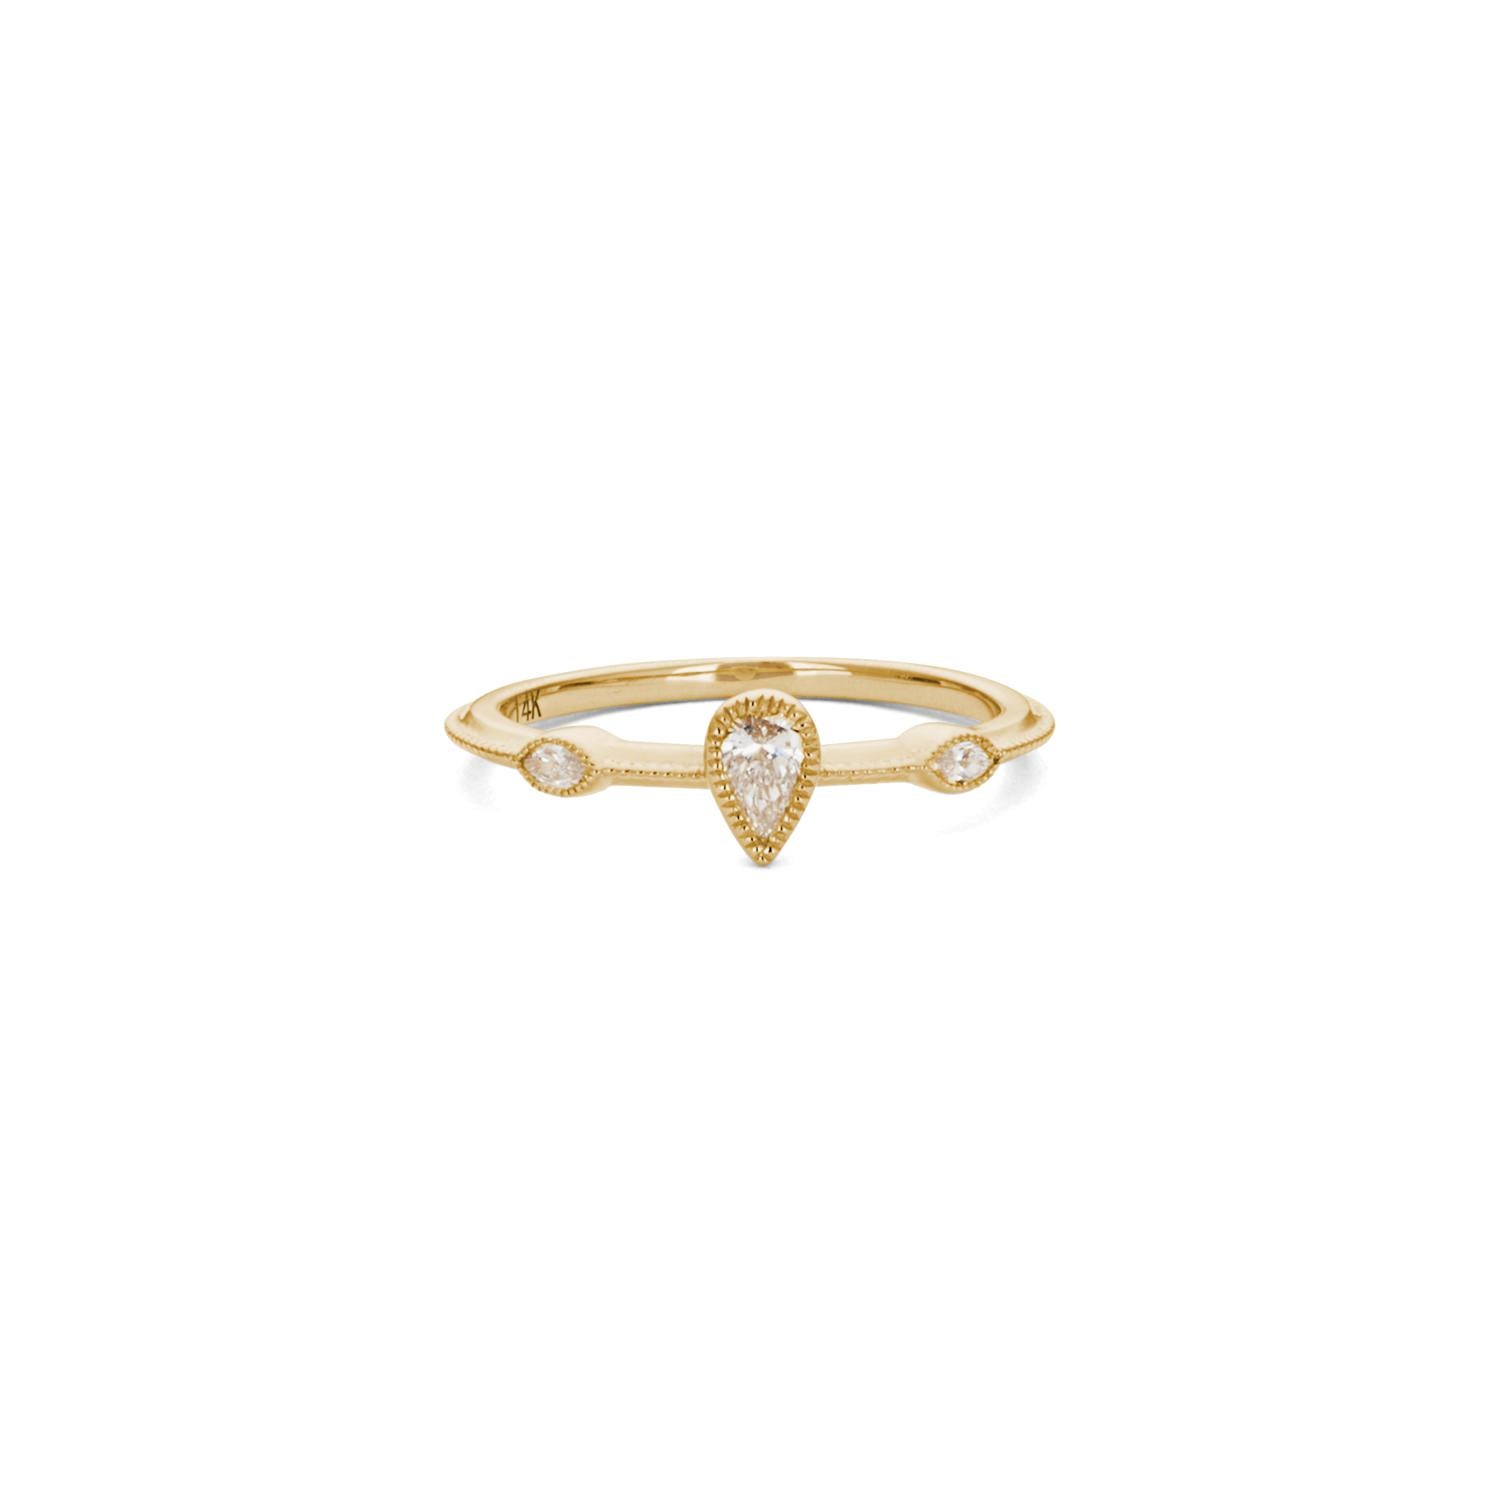 Fünf marquise Diamanten erzeugen einen Pfaueneffekt in 14 Karat Gold. Sie passen perfekt zum Hauptarmband, das einen birnenförmigen weißen Diamanten enthält, der von zwei kleineren Diamanten flankiert wird. Dieses unglaubliche Set sieht an jedem